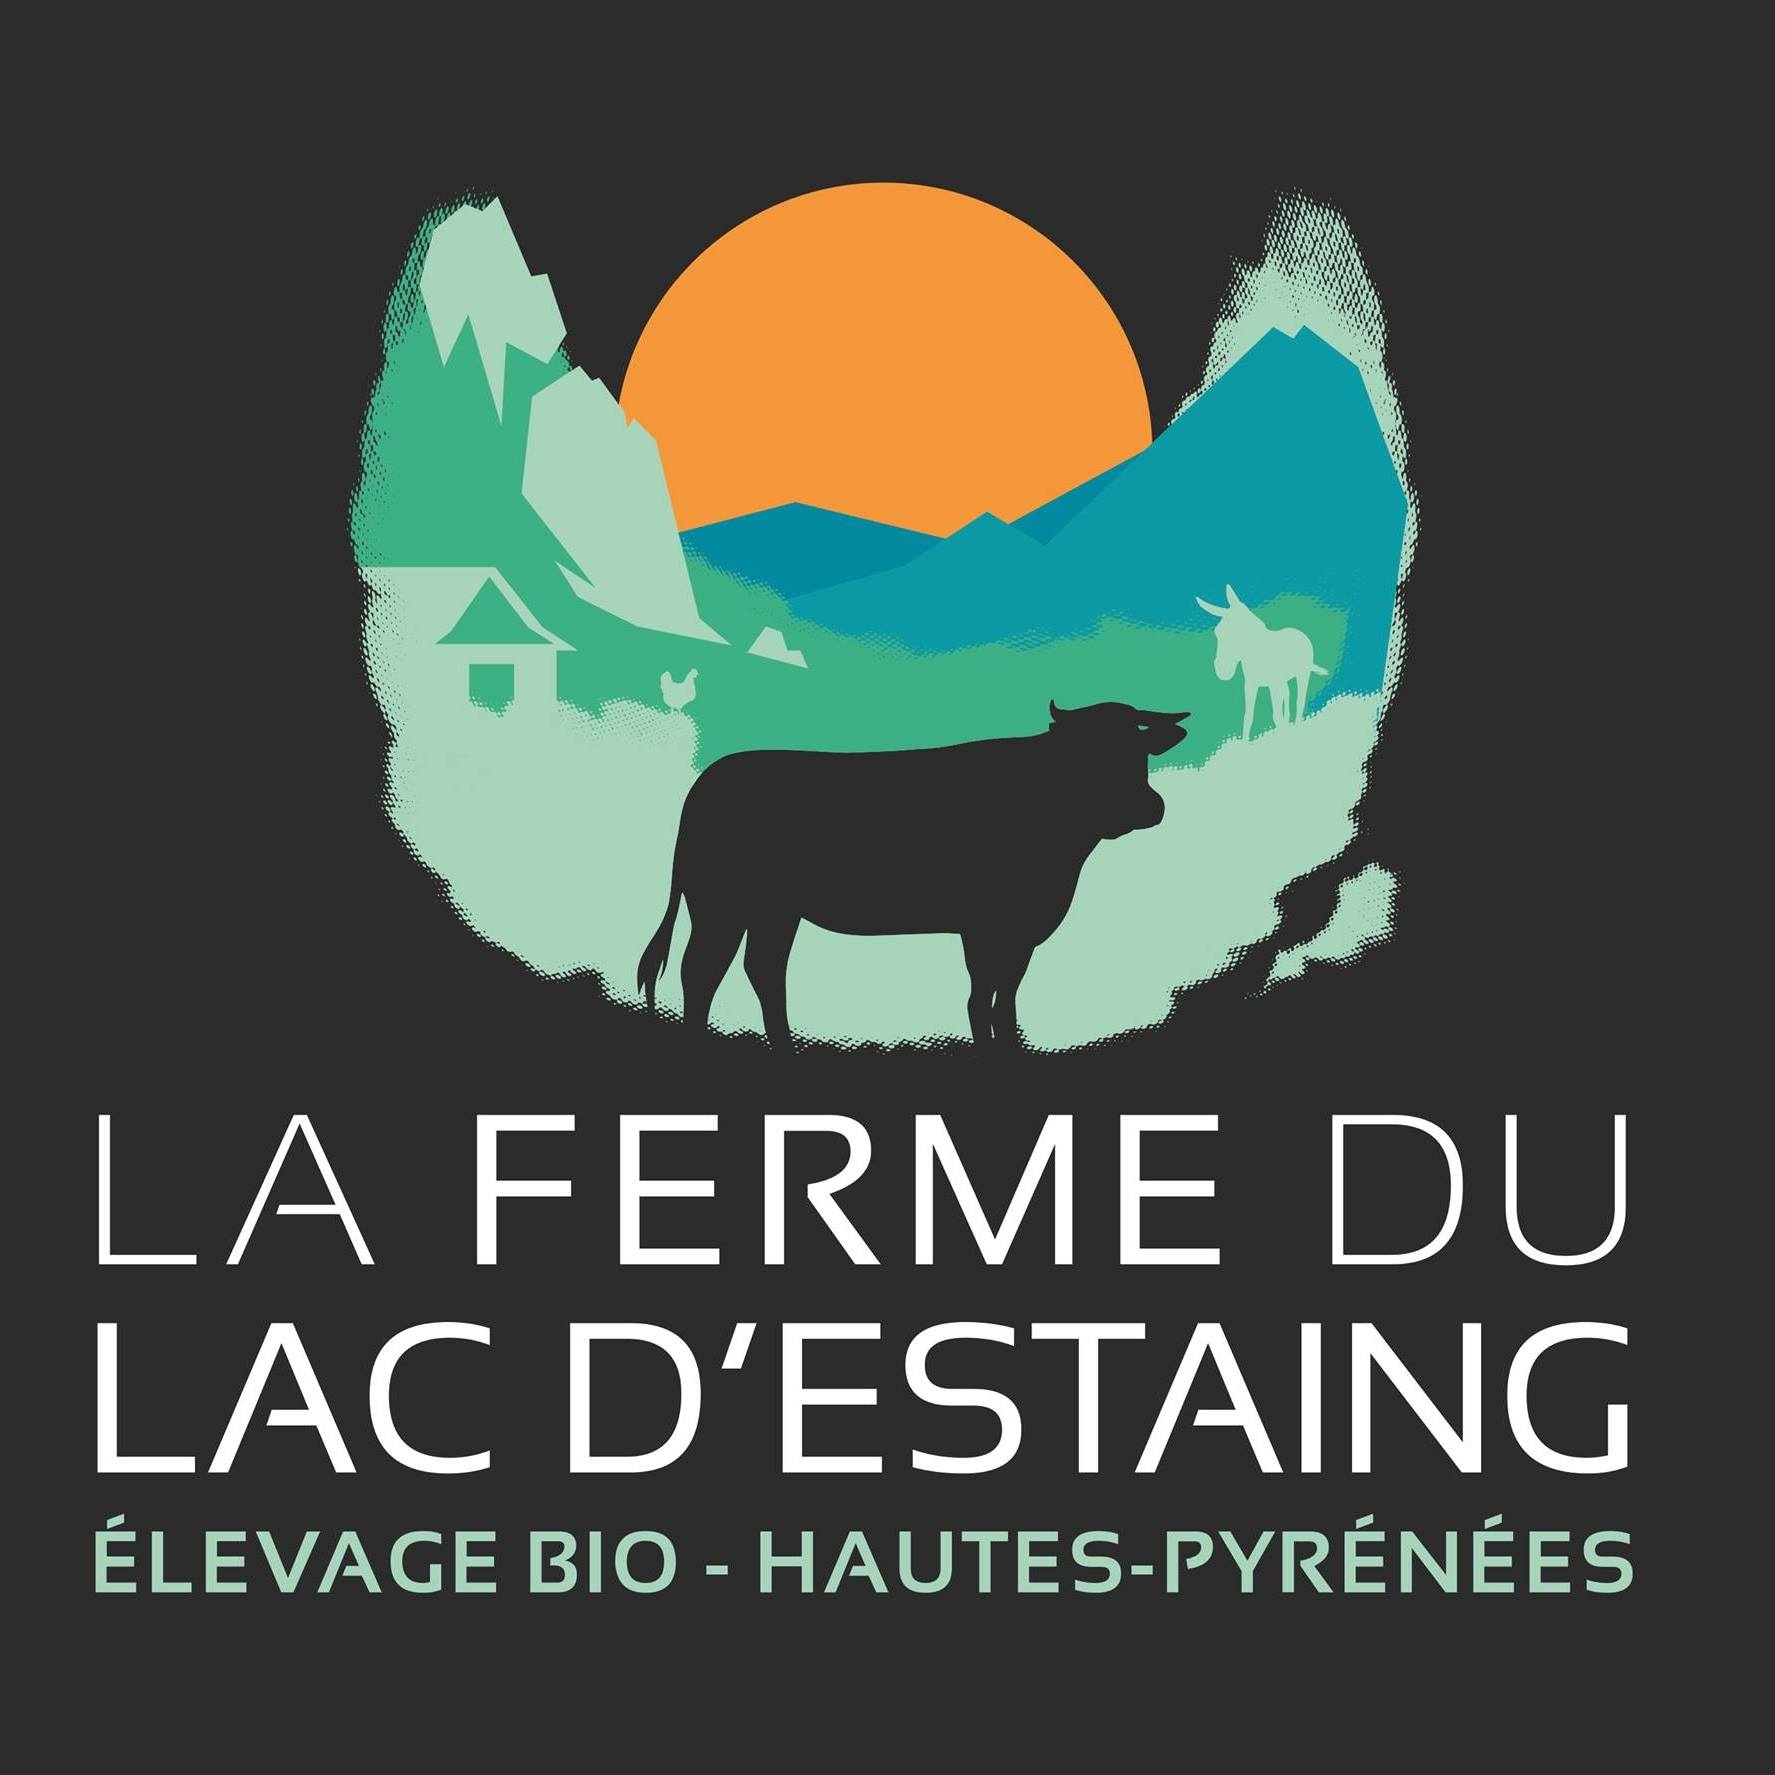 La Ferme du Lac d'Estaing : Le local selon Biocoop